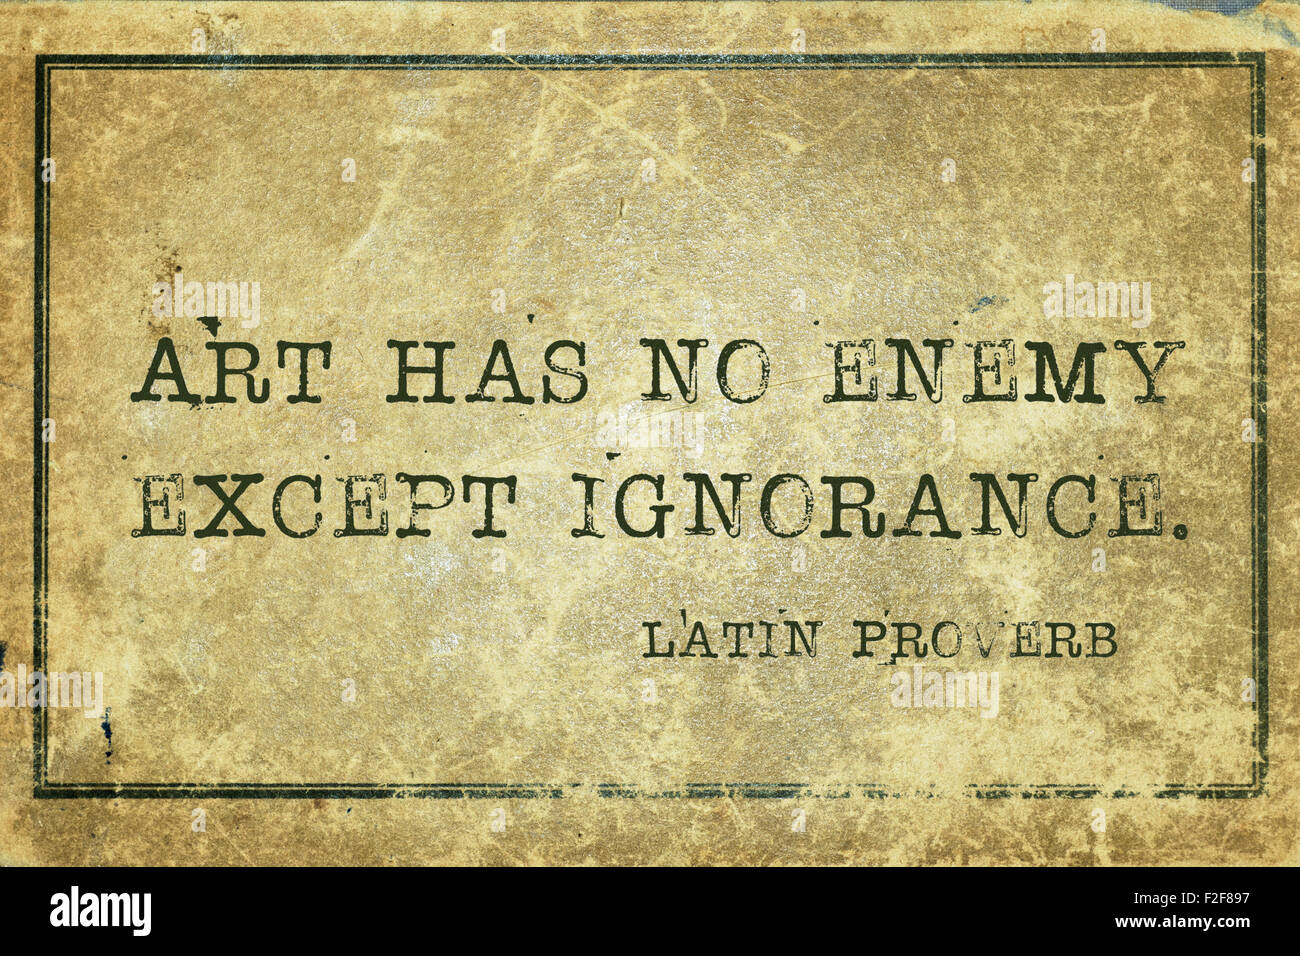 El arte no tiene ningún enemigo excepto la ignorancia - antiguo proverbio latino impreso en cartón vintage grunge Foto de stock